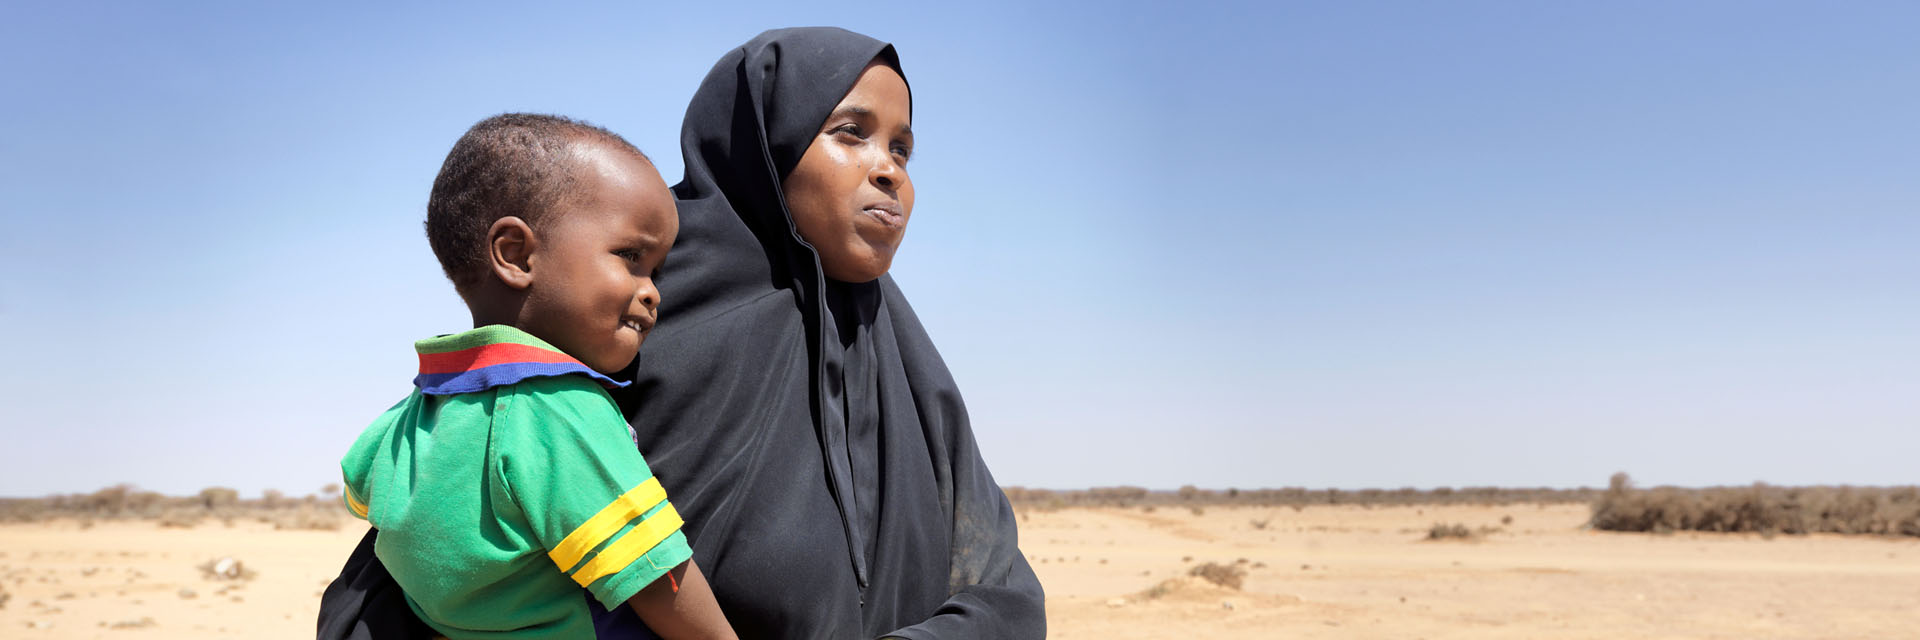 Foto: Somalische Mutter mit Kleinkind auf der Hüfte